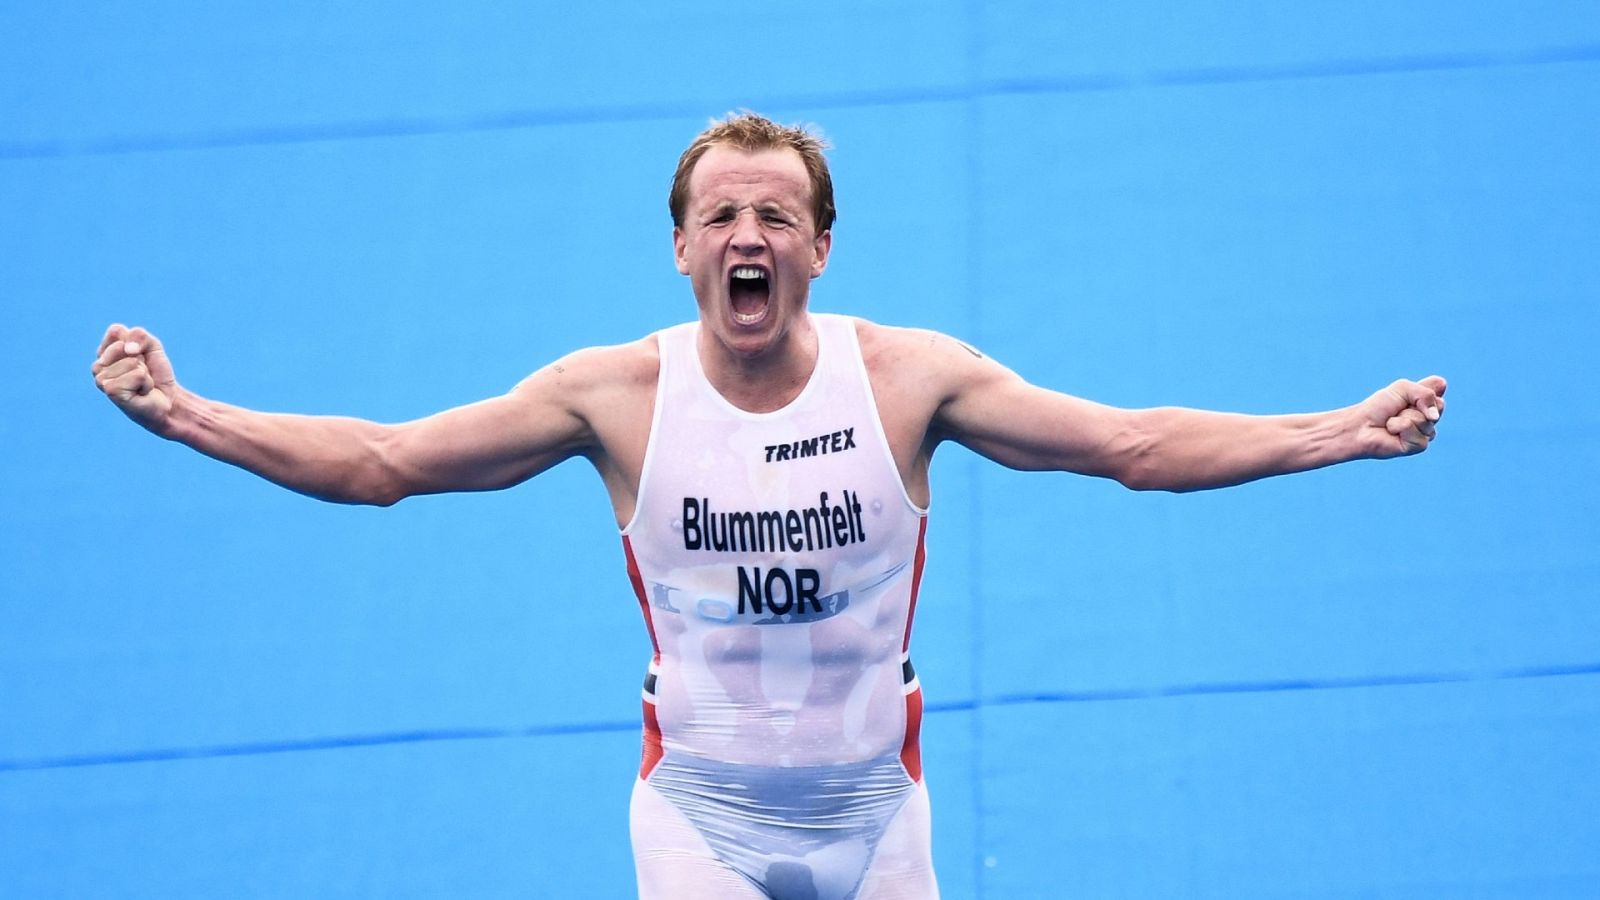 Tokyo 2020 - El noruego Kristian Blummenfelt, oro en triatlón - Ver ahora